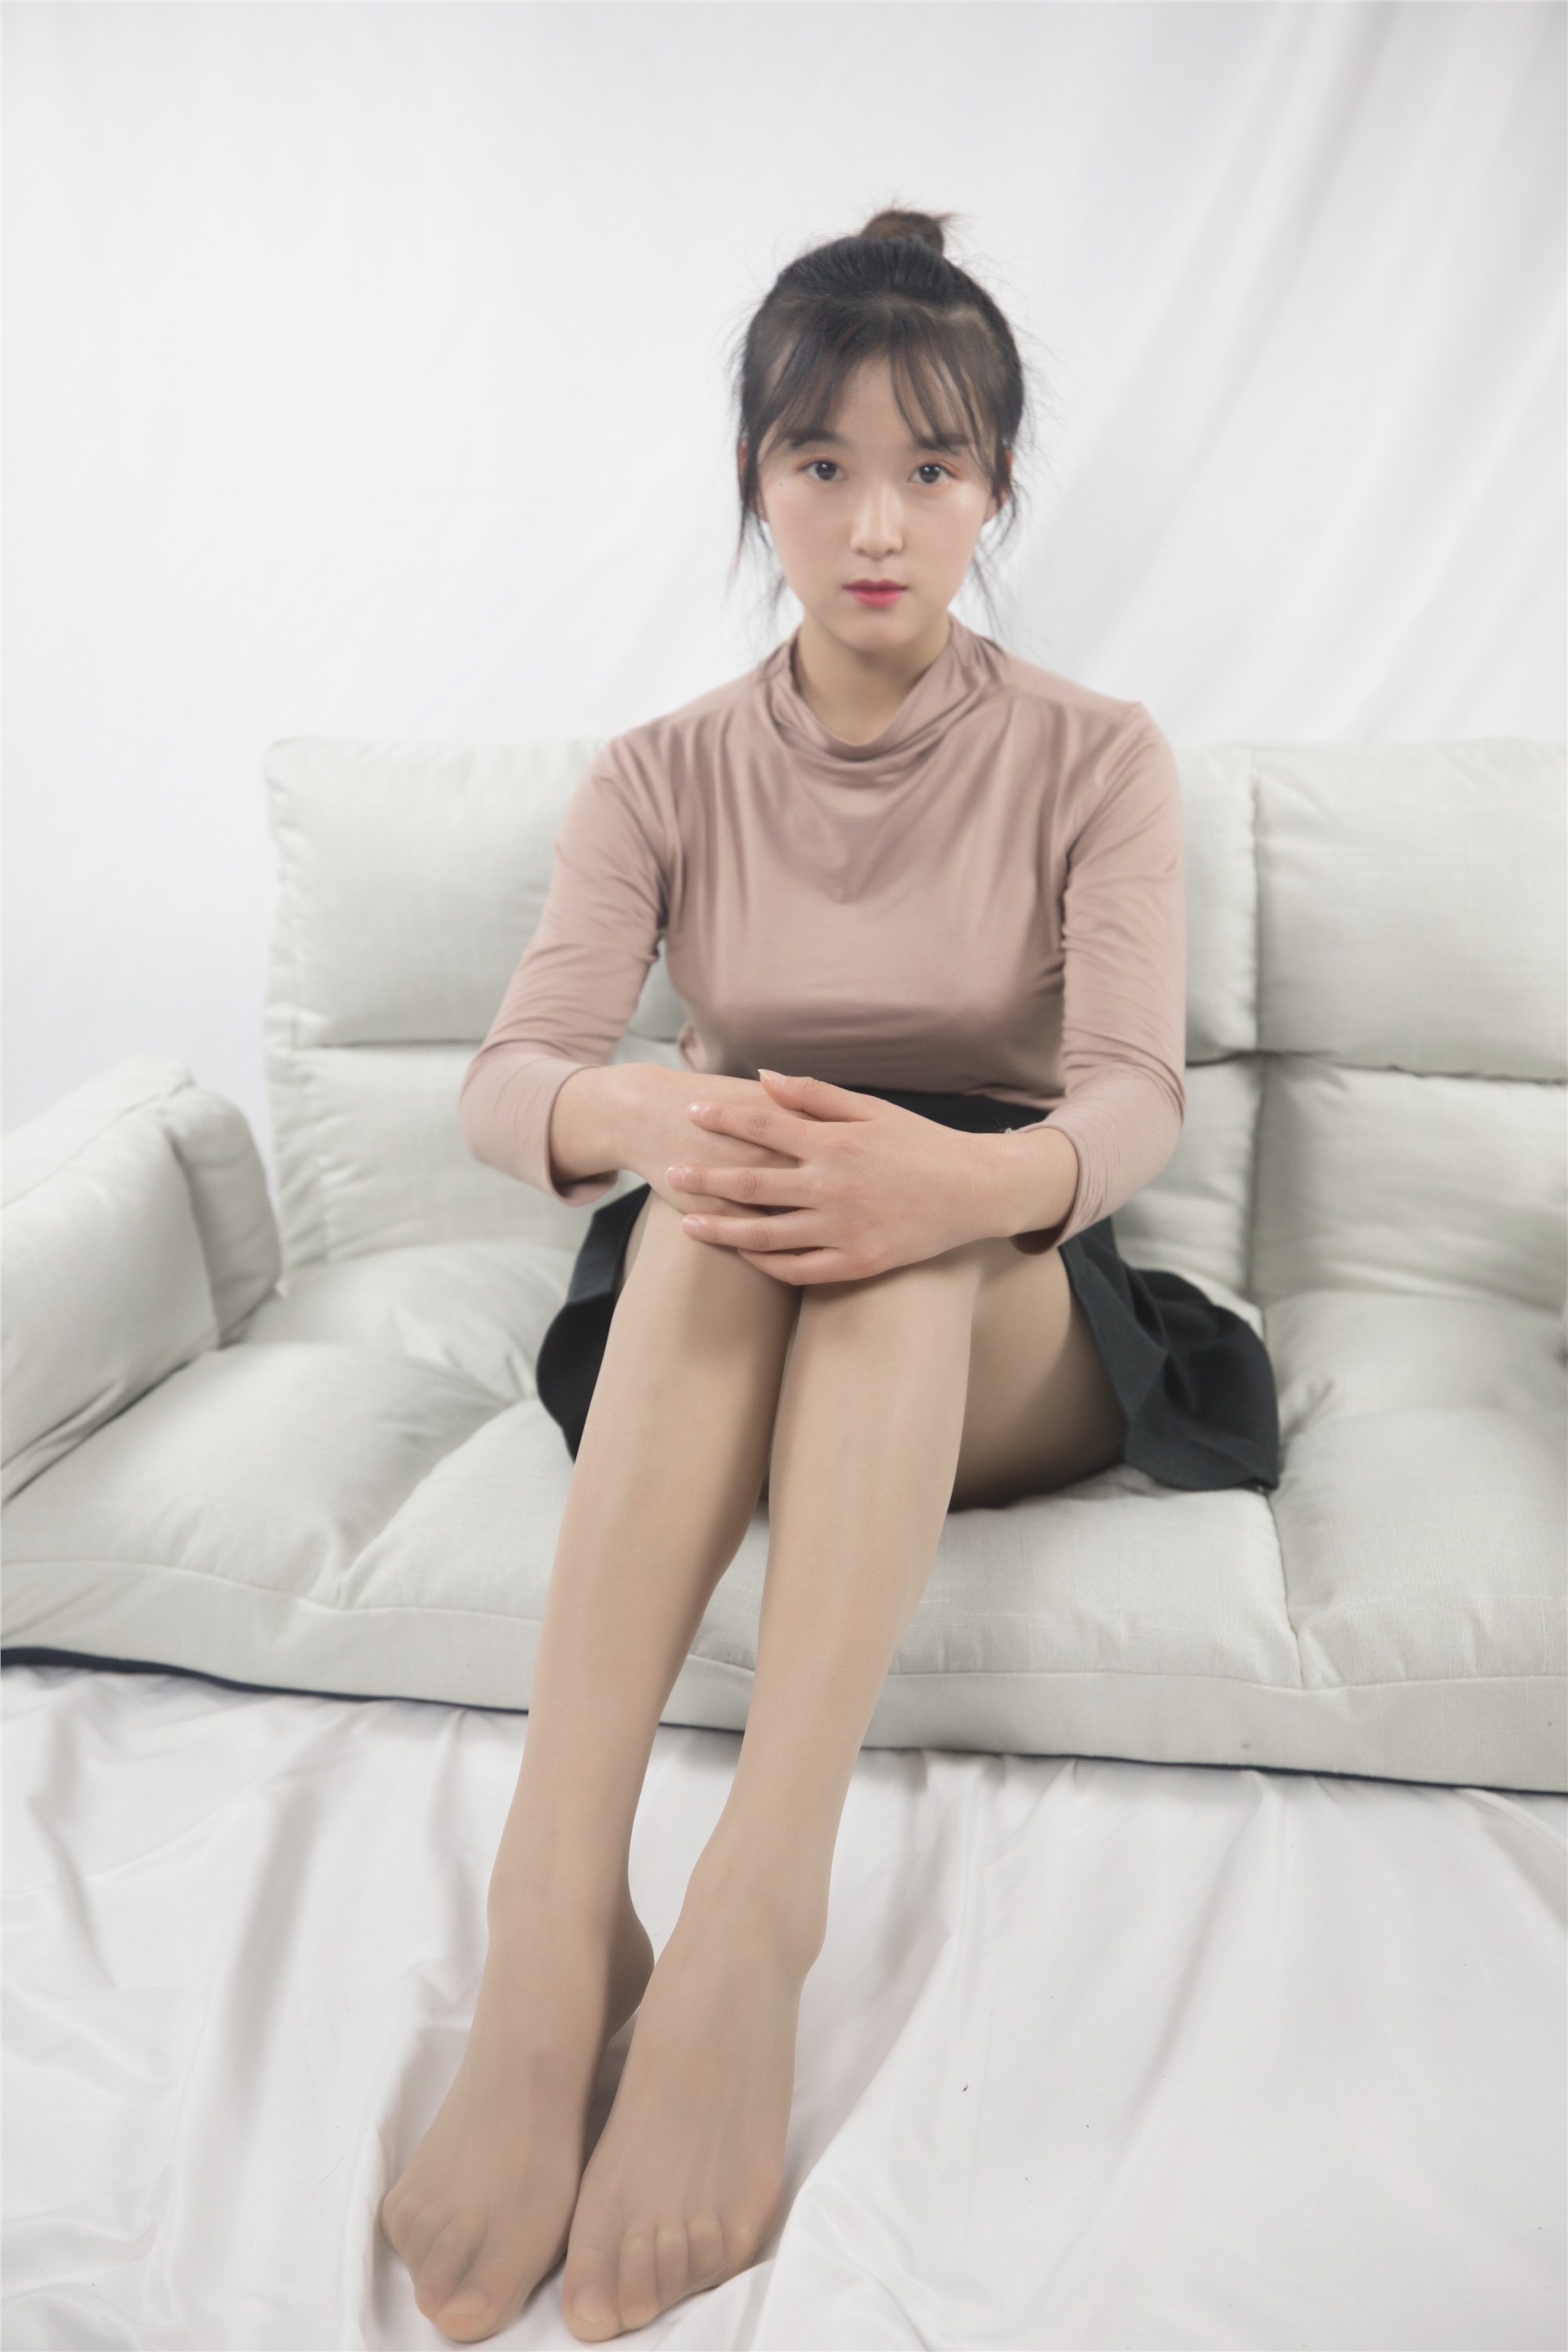 Mslass dream goddess December 12, 2019 Vol.082 Miss Chen Ling's decent figure